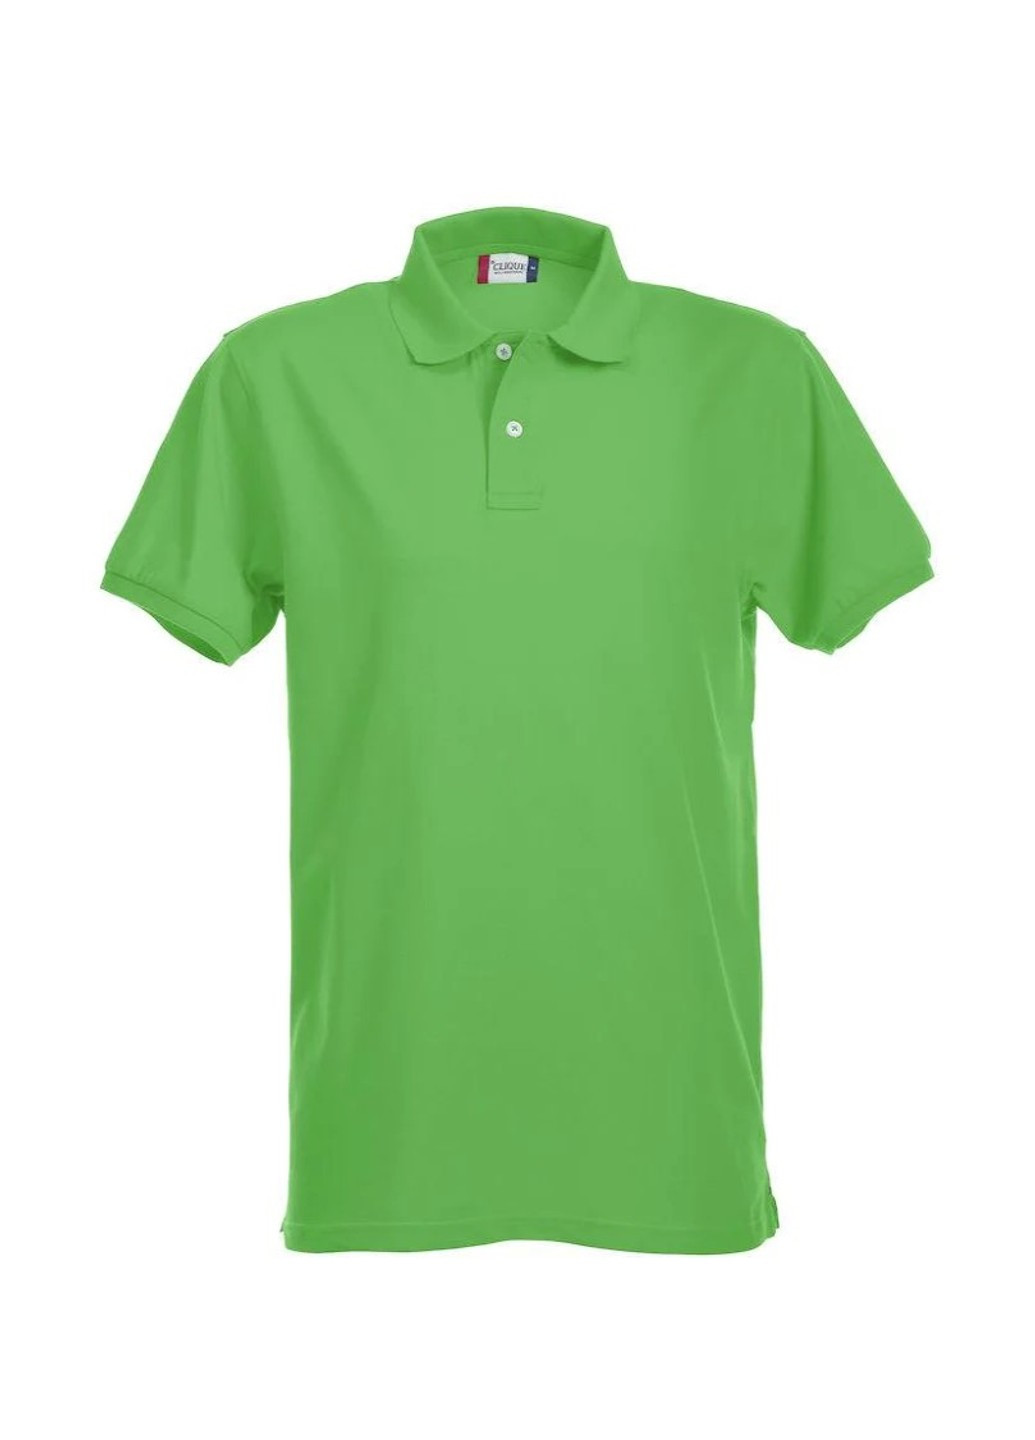 Салатова футболка style: polo alba салатового кольору Clique